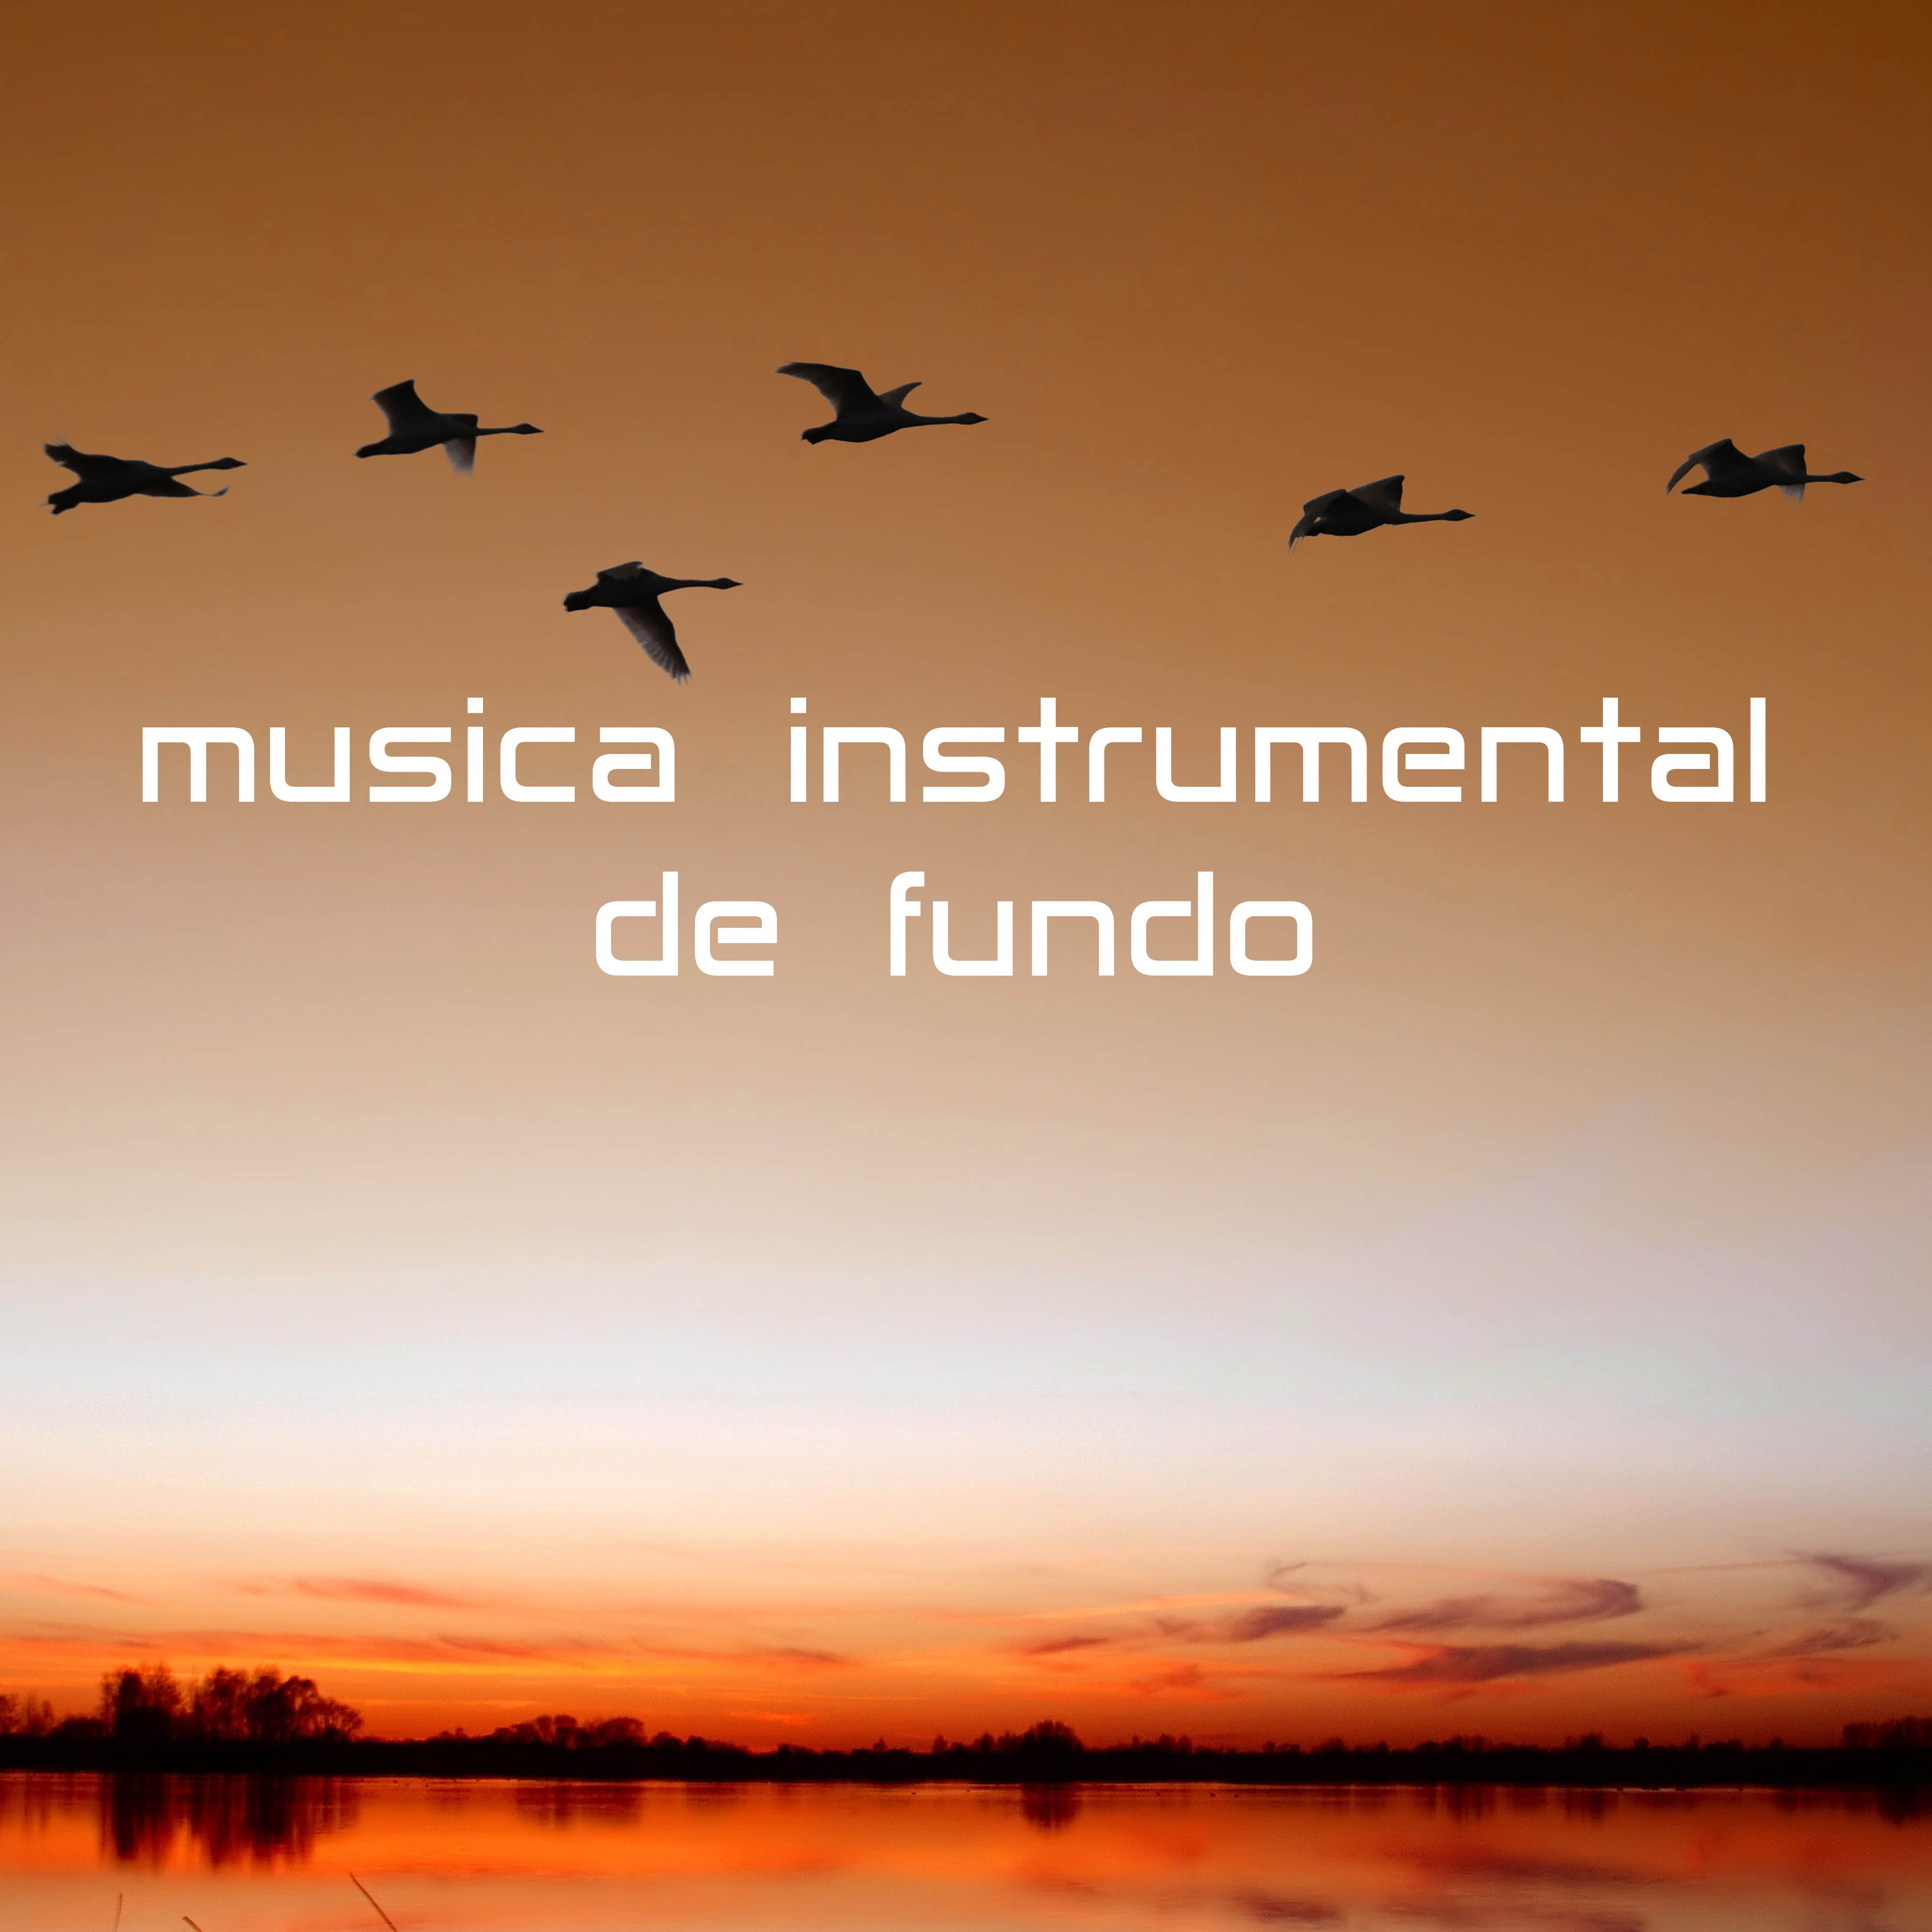 Musica Instrumental de Fundo para Concentrarse y Estudiar